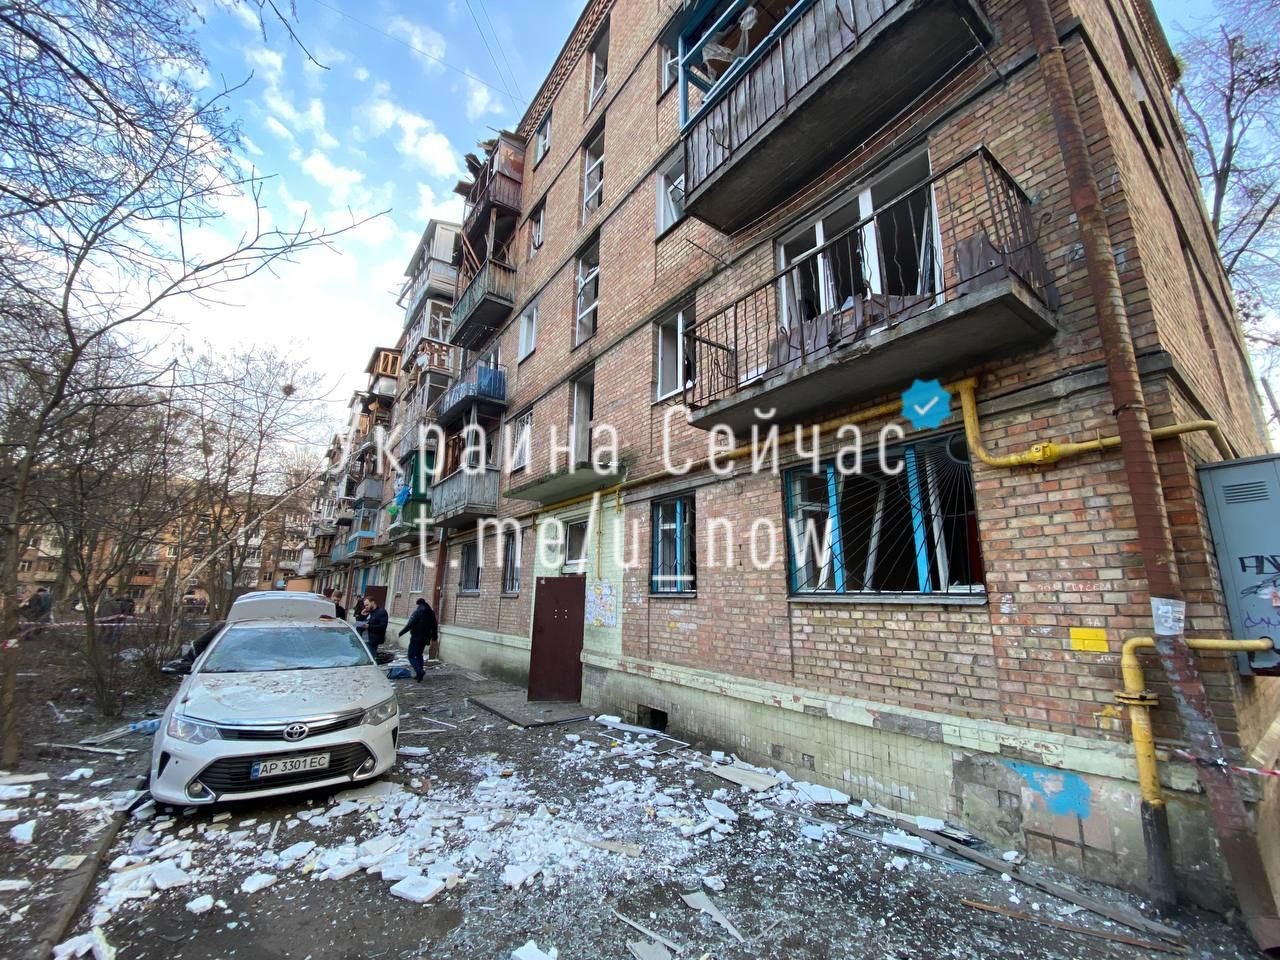 Перші кадри з місця вибуху у Солом‘янському районі Києва